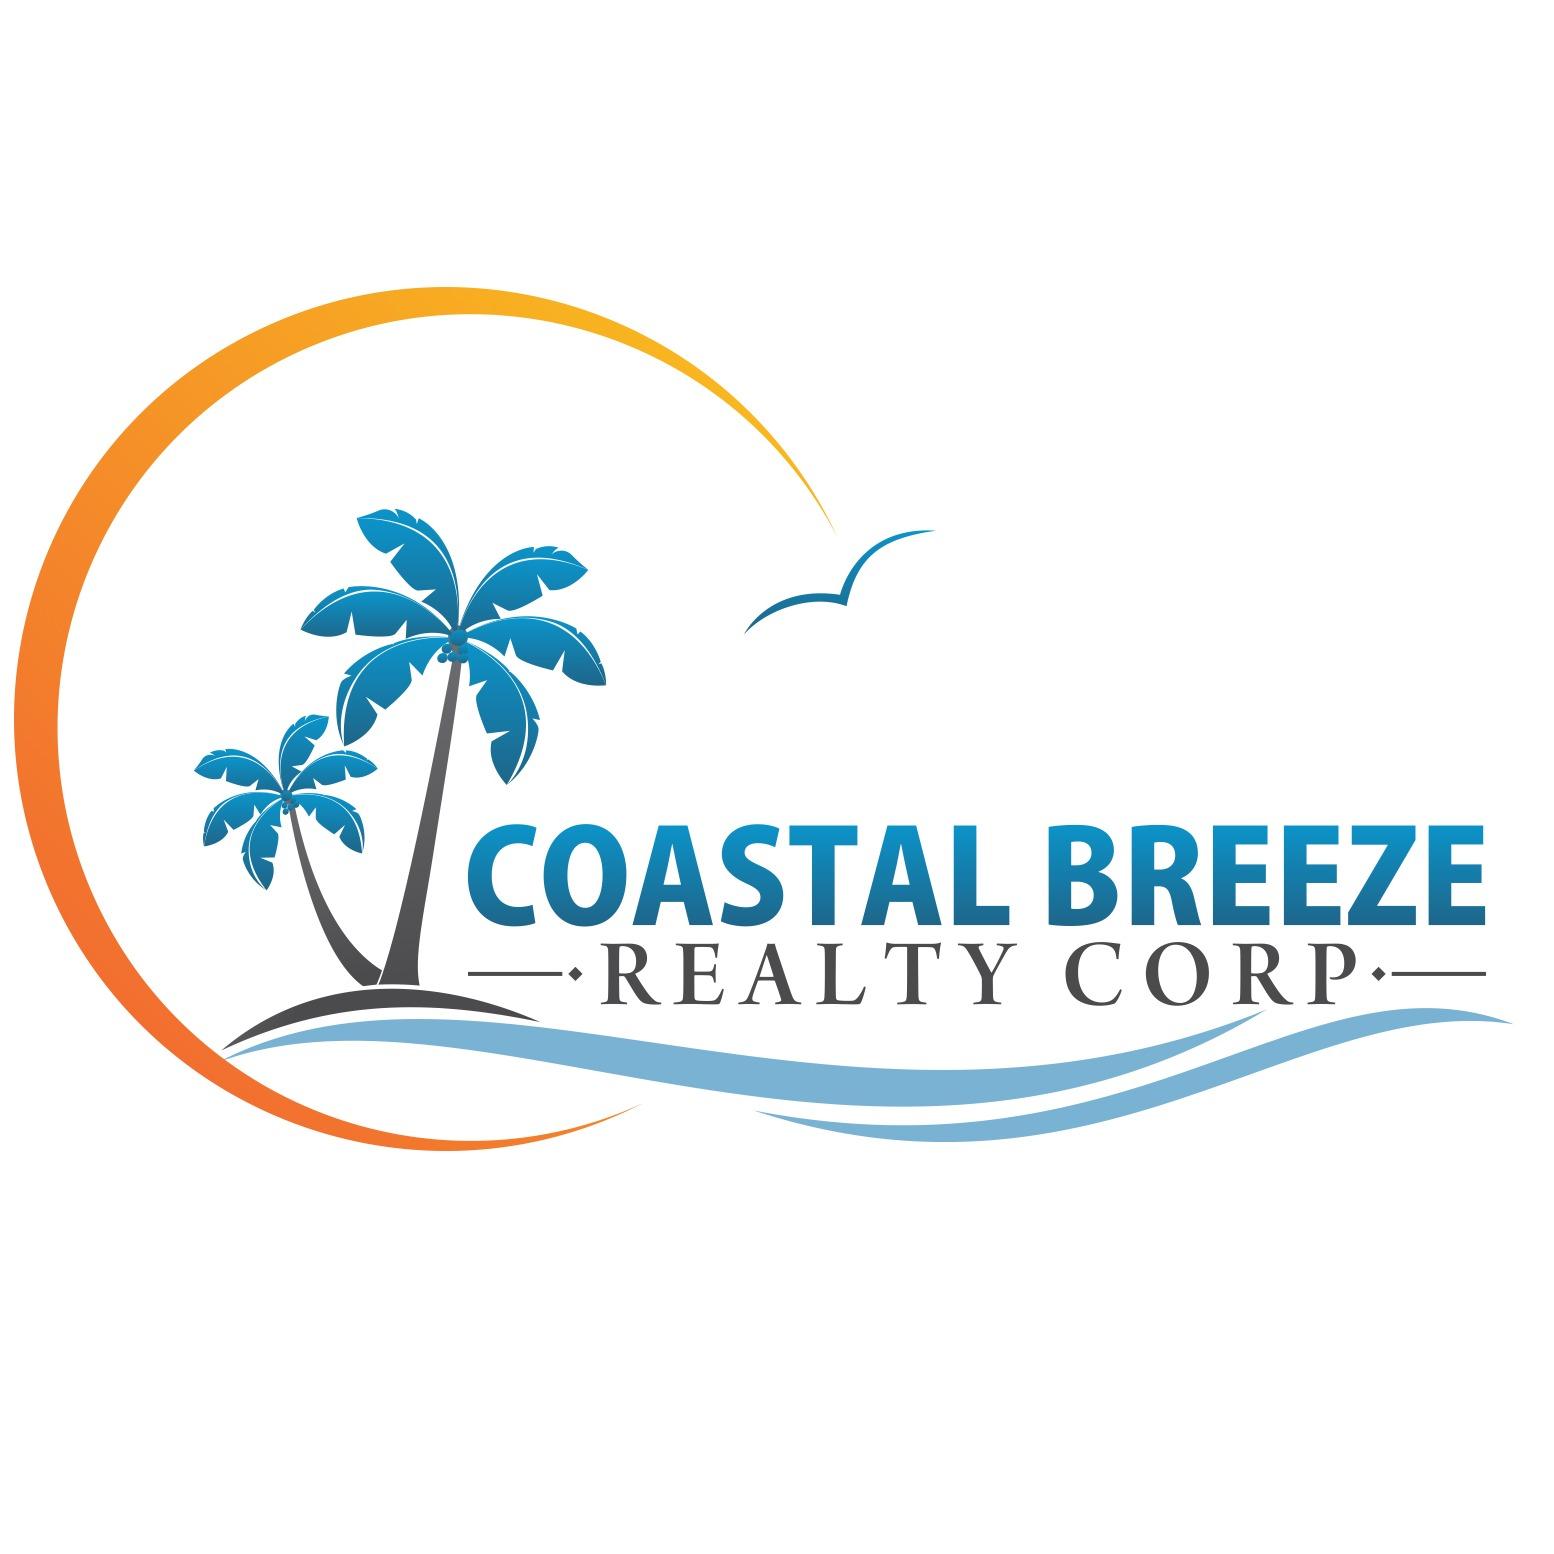 Coastal Breeze Realty Corp. Logo